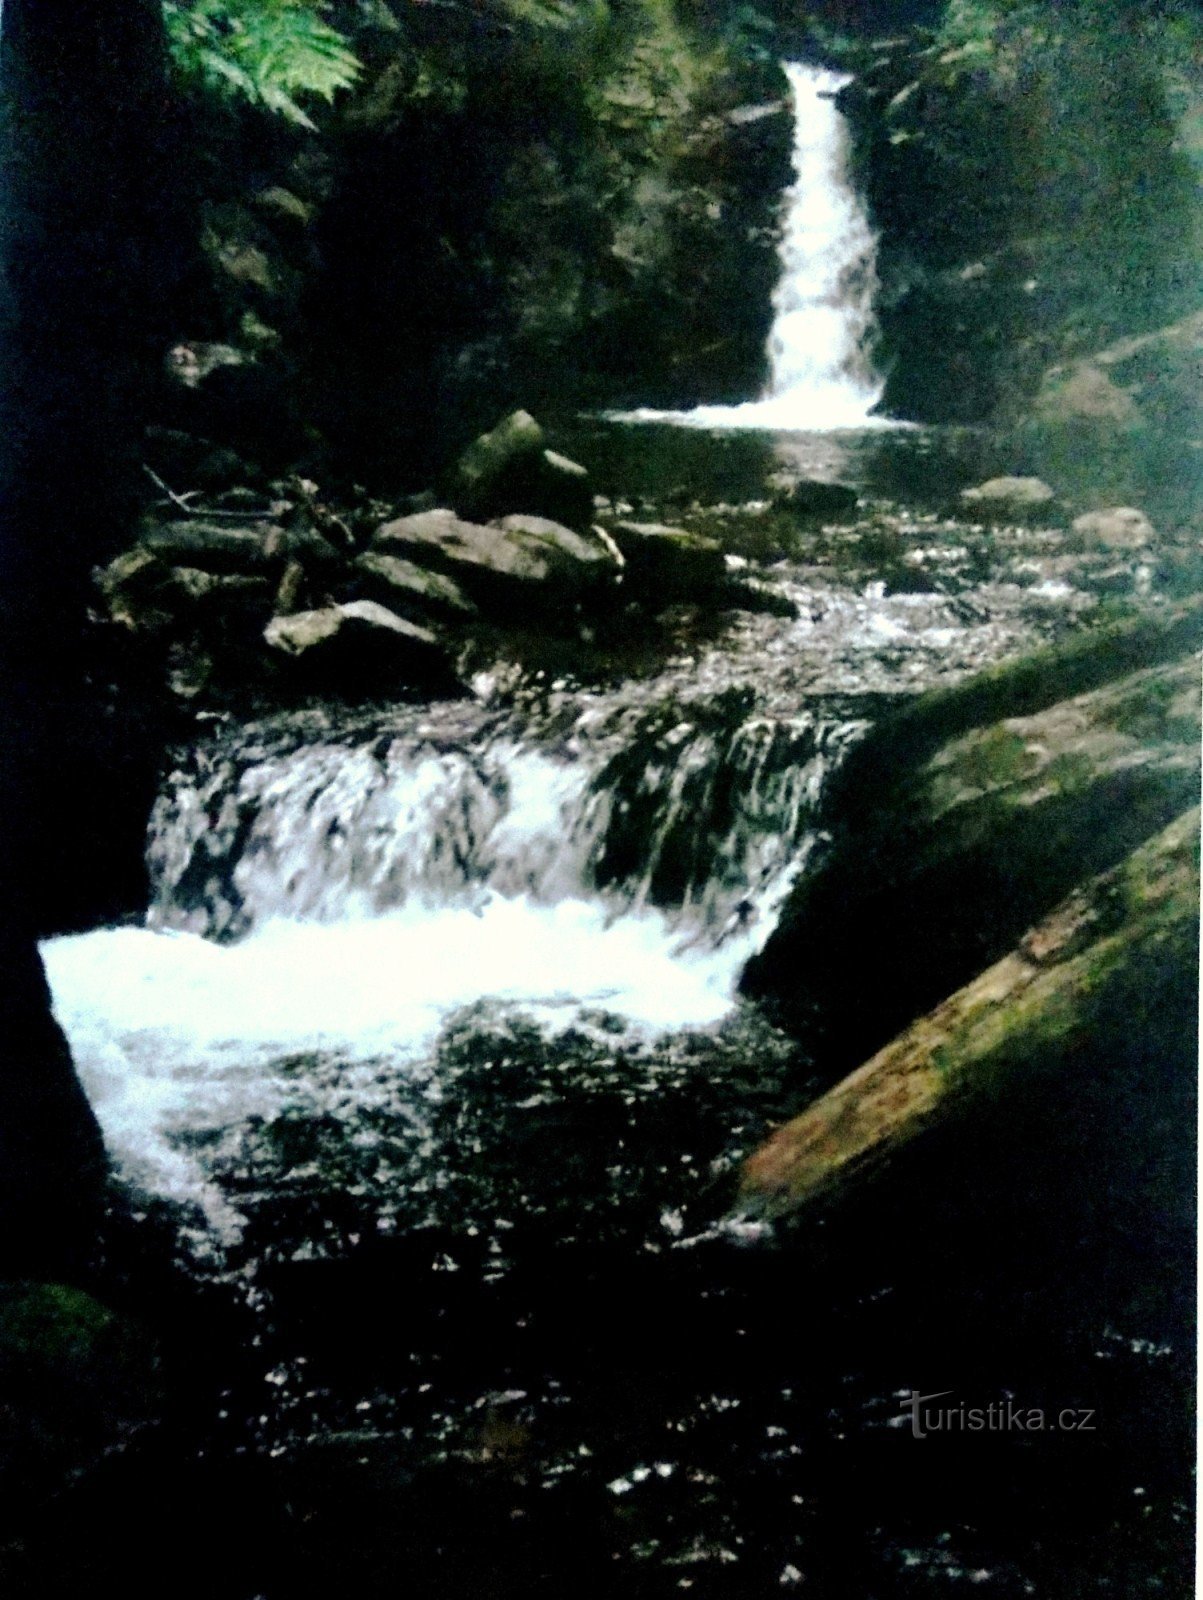 Đến thác nước Nýzner lãng mạn ở dãy núi Rychleb